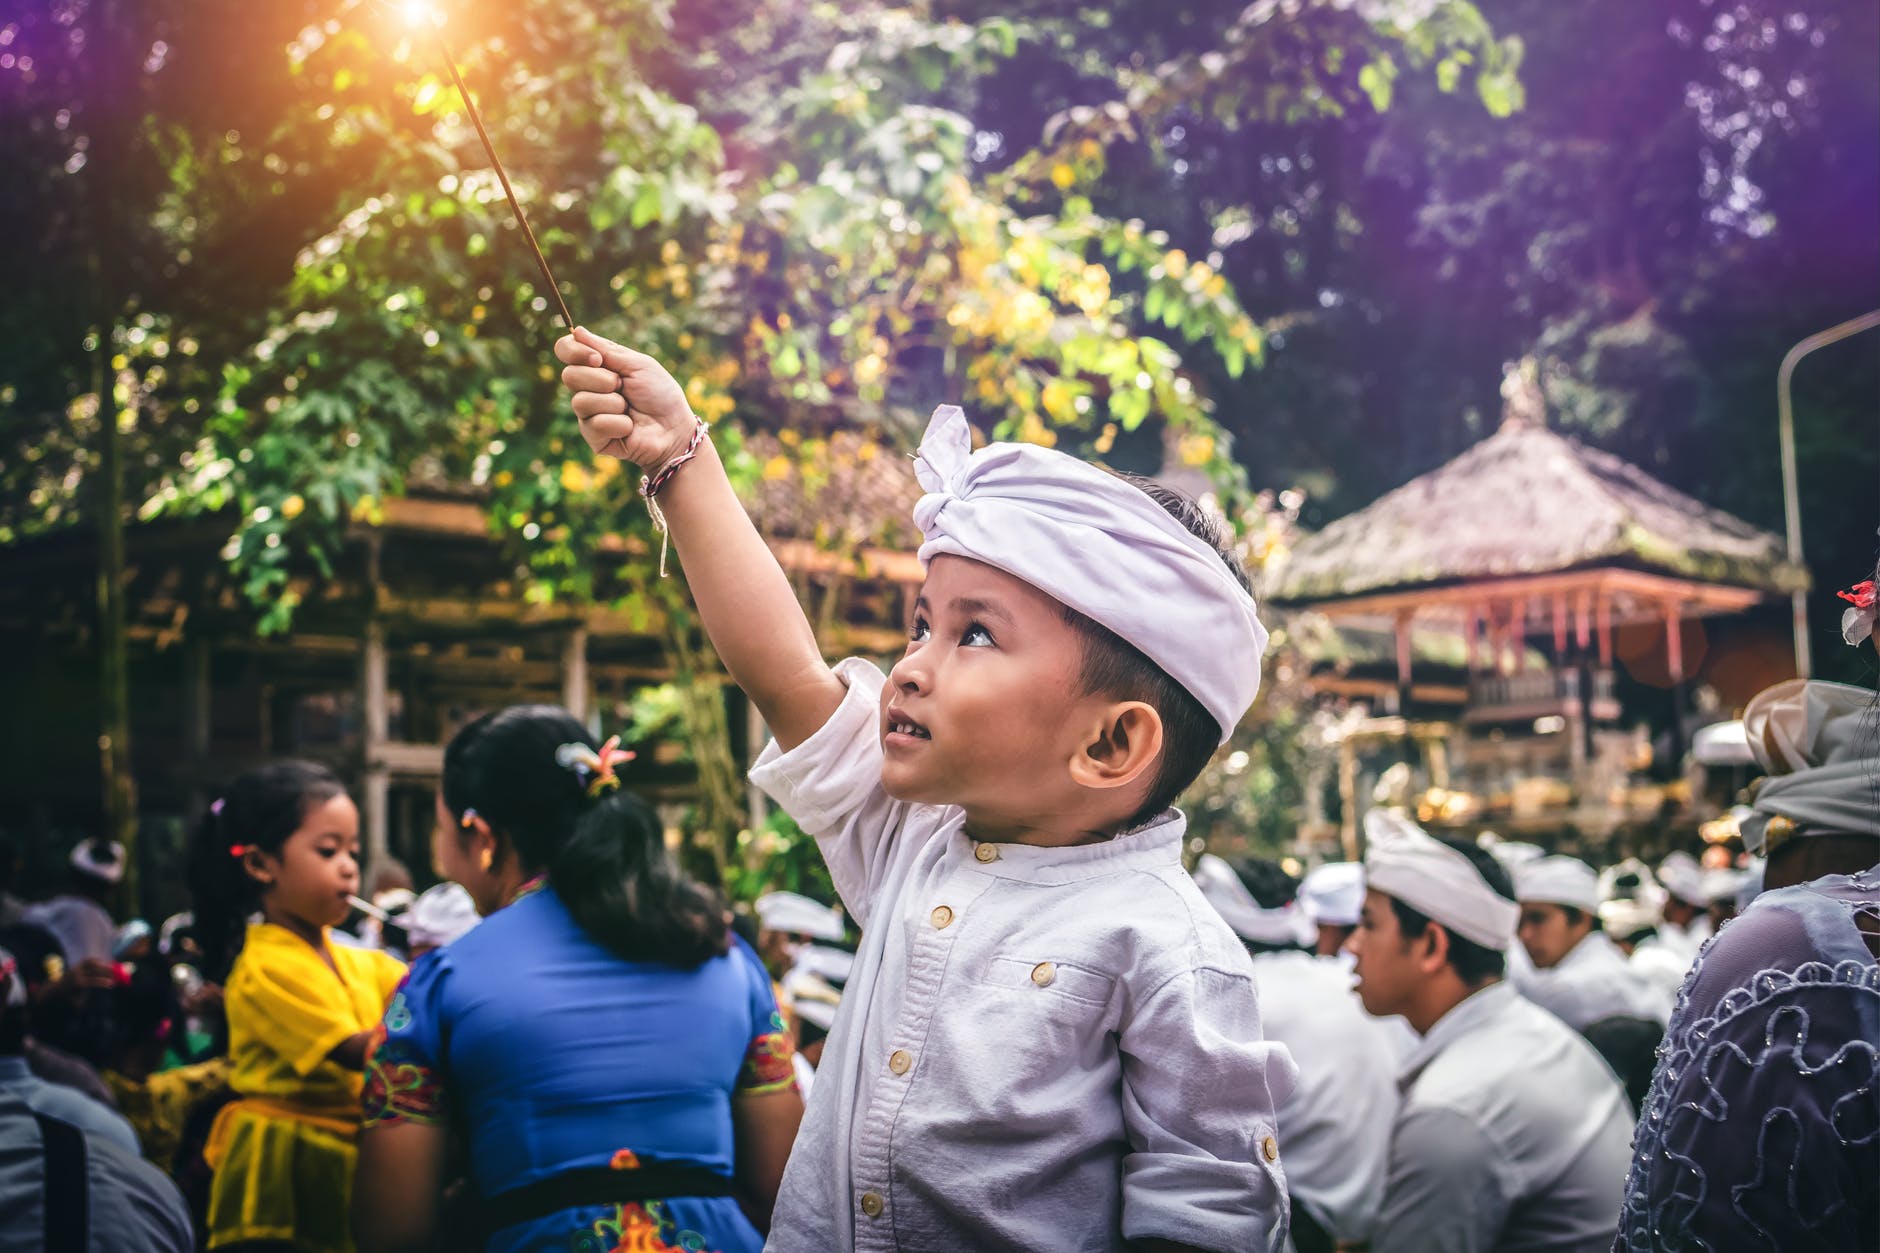 اسواق سورابايا اندونيسيا : 4 من افضل اسواق مدينة سورابايا اندونيسيا